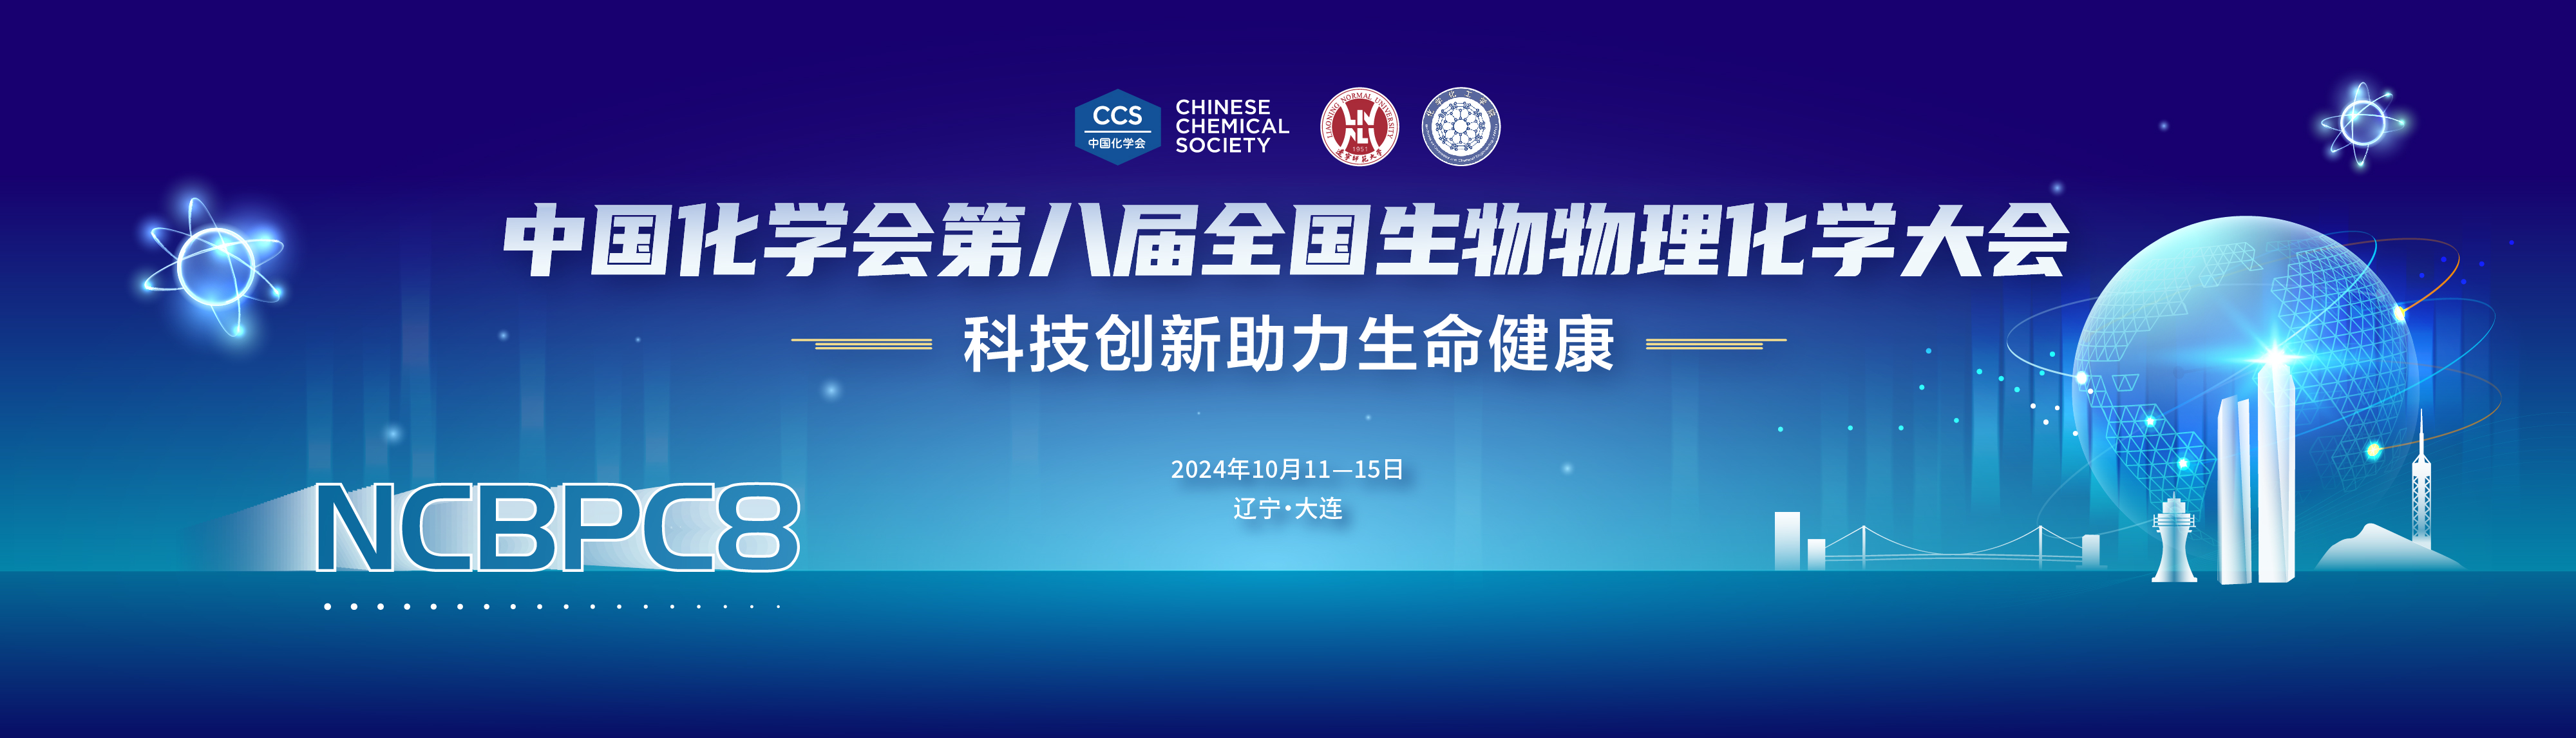 中国化学会第八届全国生物物理化学大会